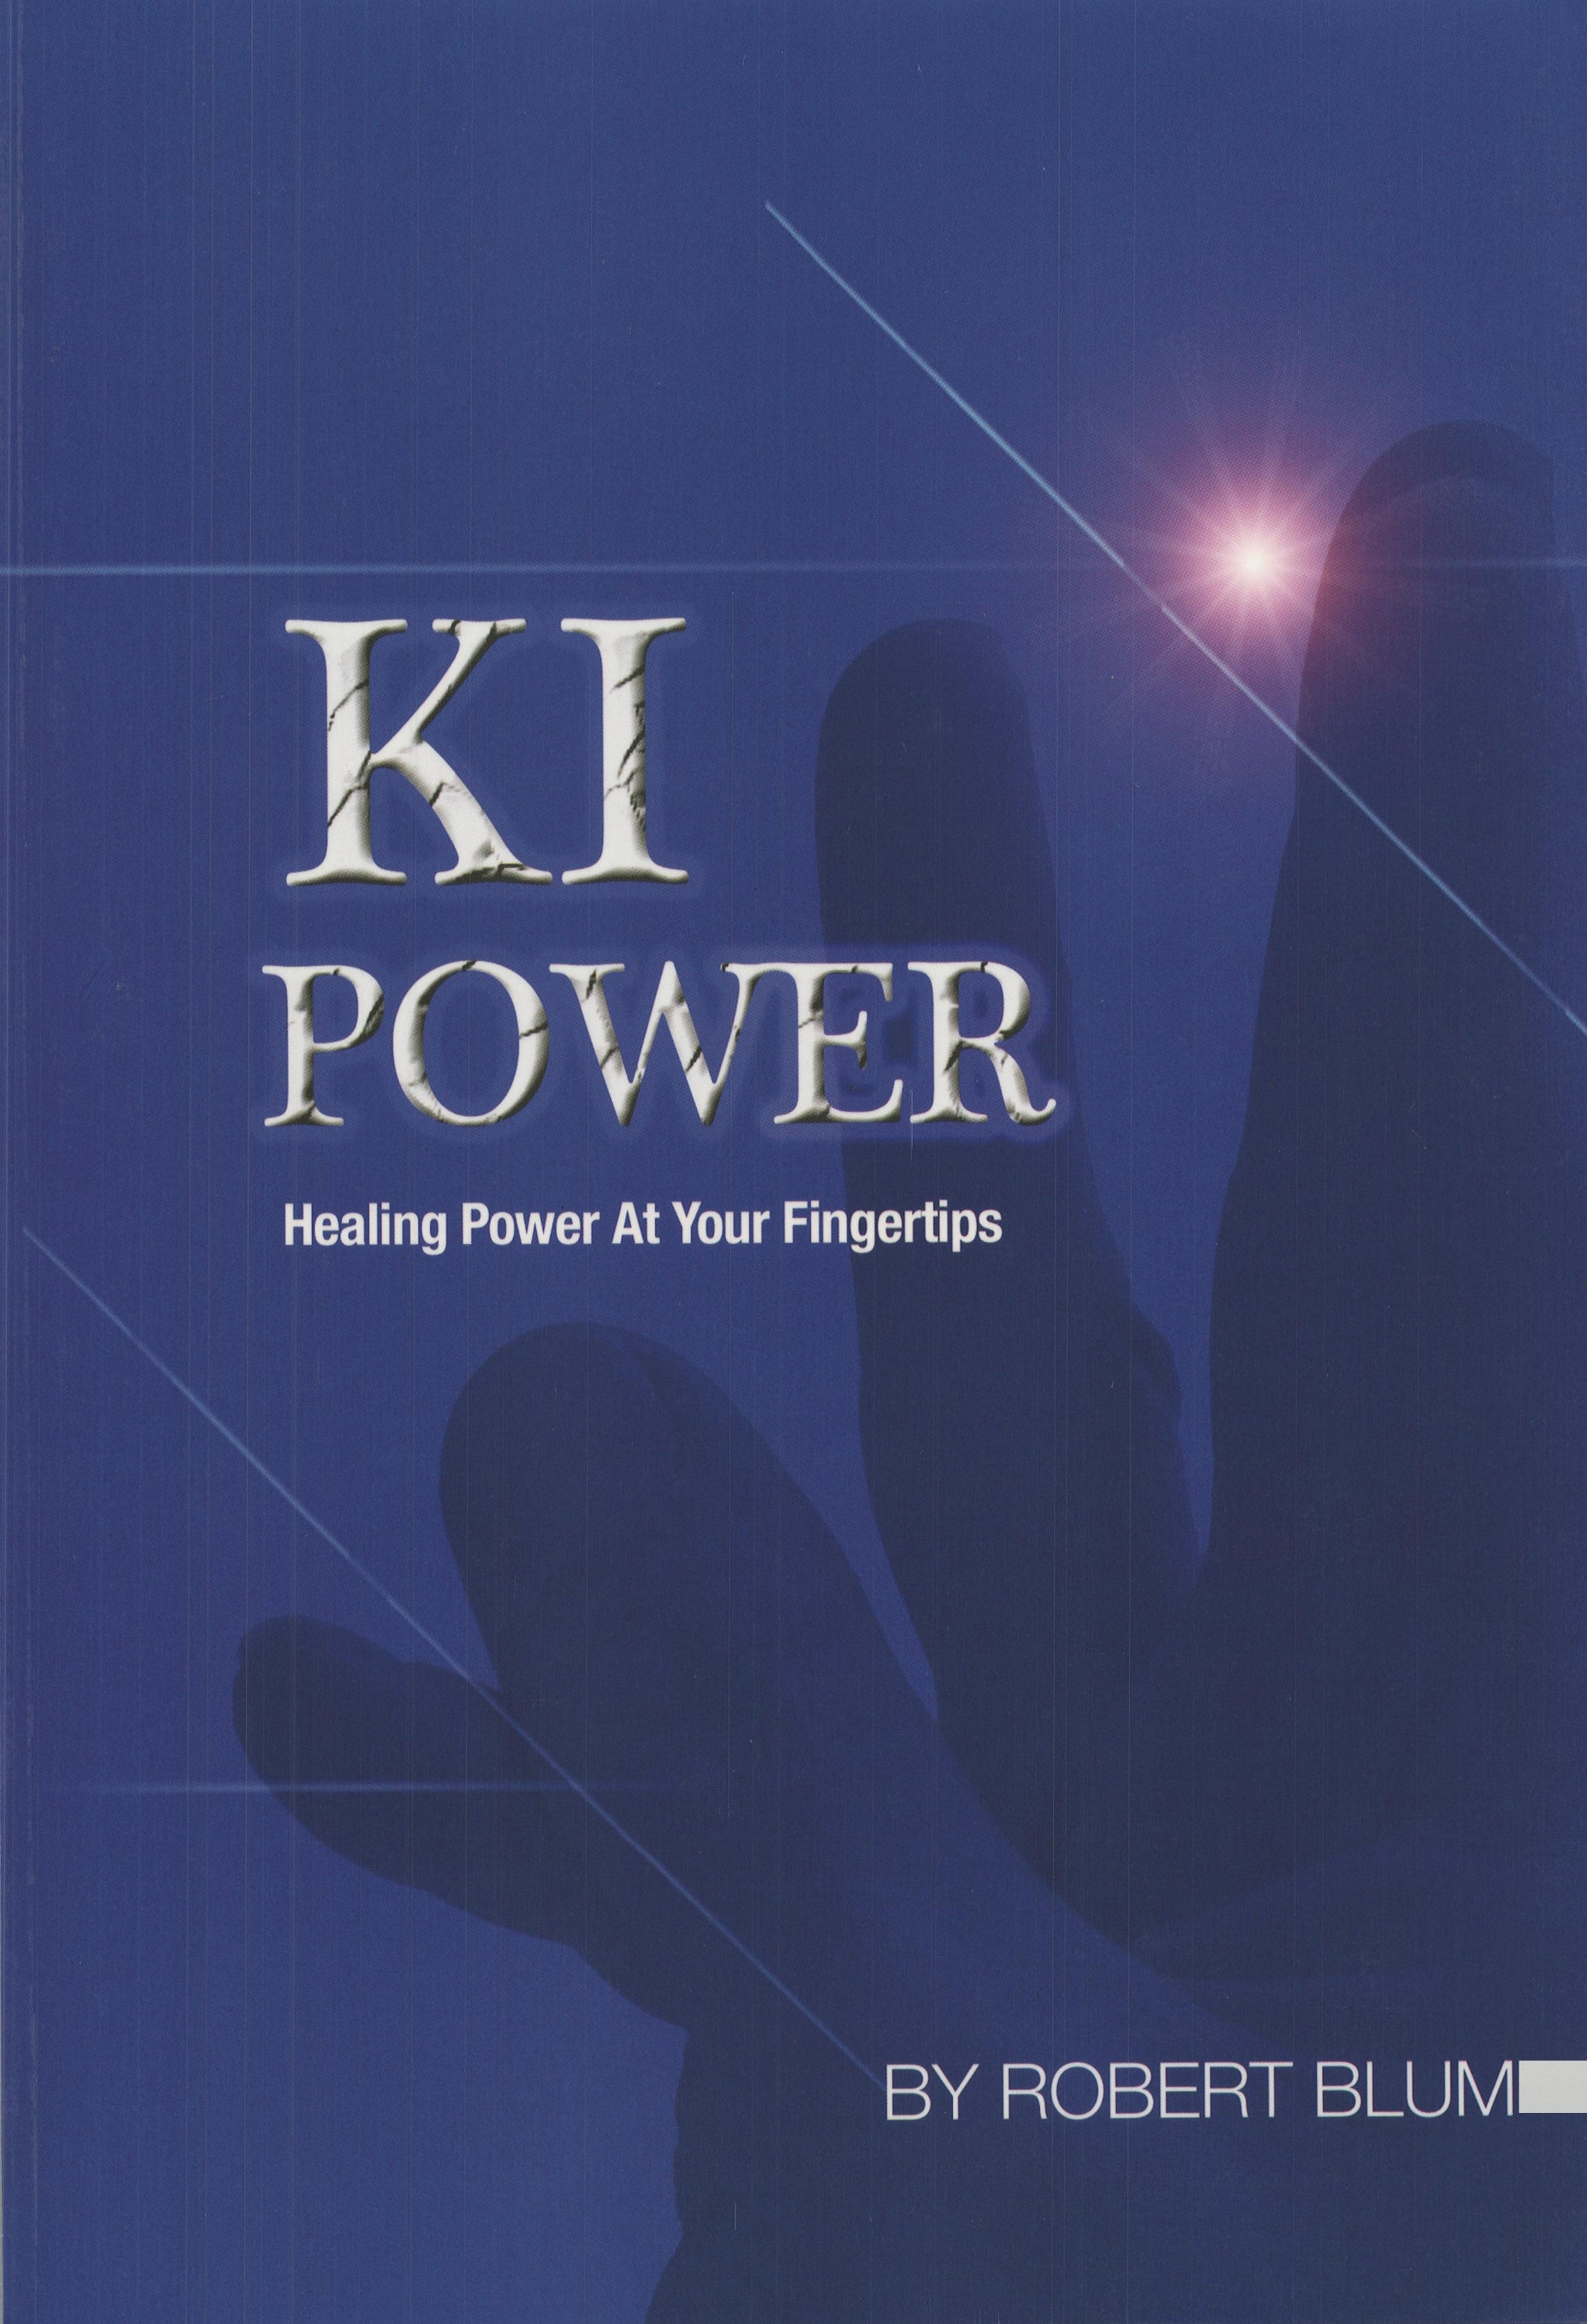 KI Healing Power at Fingertips Book Robert Blum ancient asian healing art